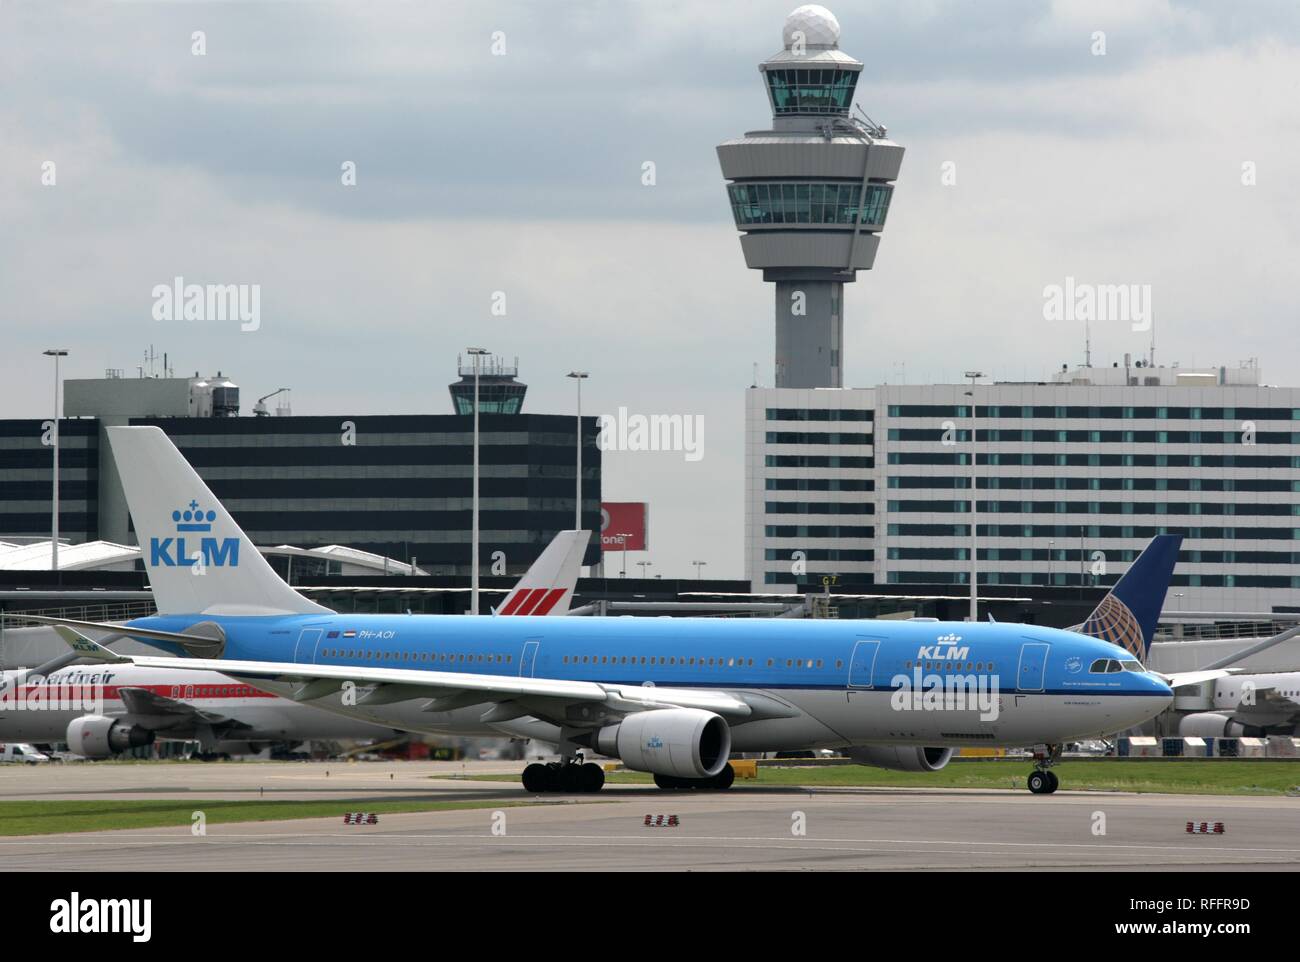 Der internationale Flughafen Schiphol Amsterdam mit KLM Flugzeug, Amsterdam, Nordholland, Niederlande Stockfoto